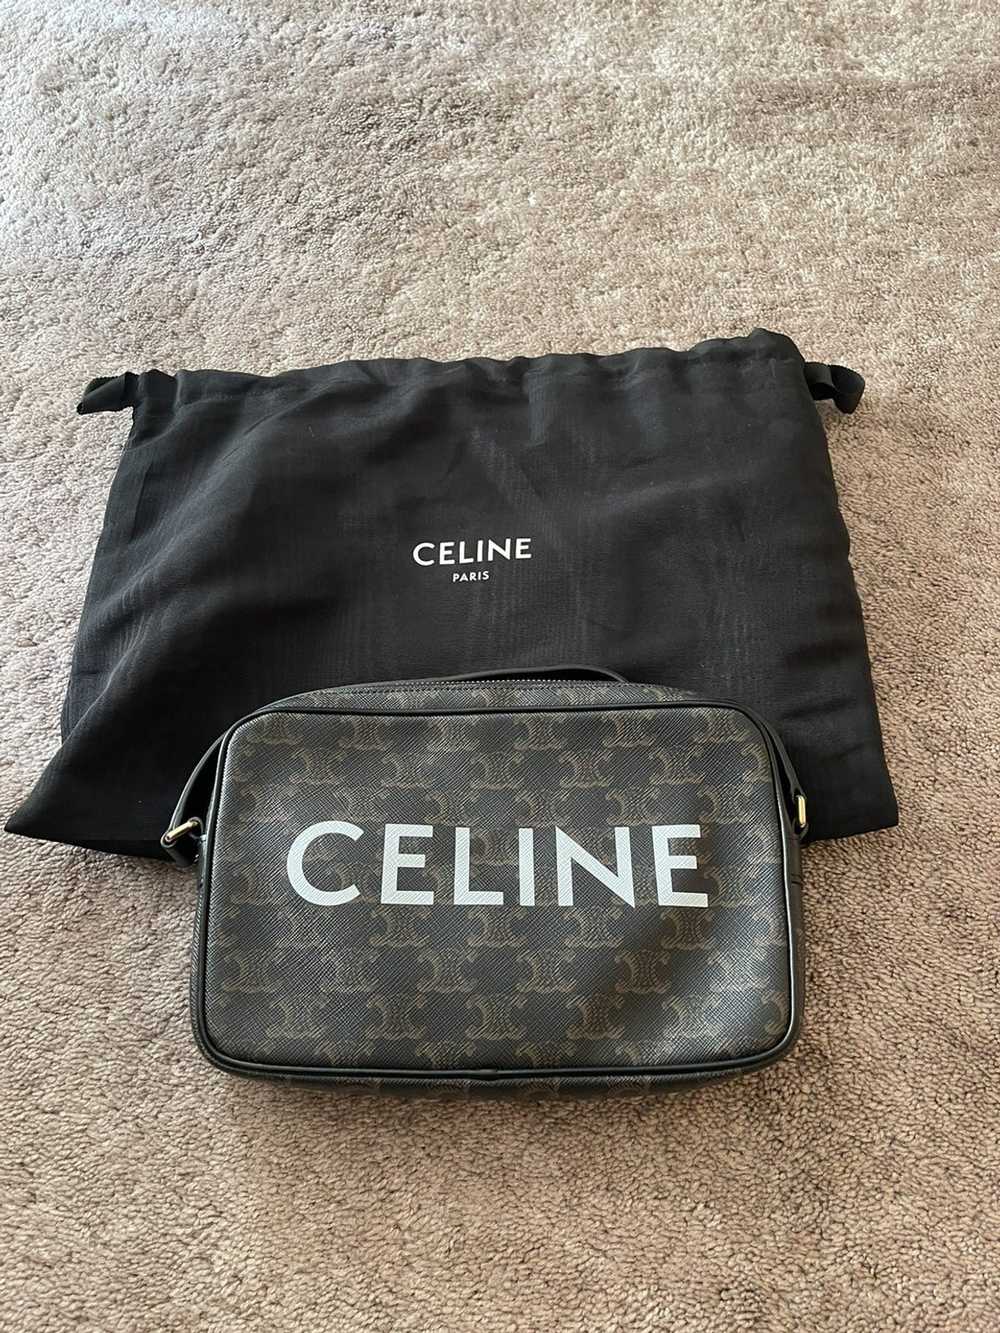 Celine Authentic Celine logo messenger bag - image 2